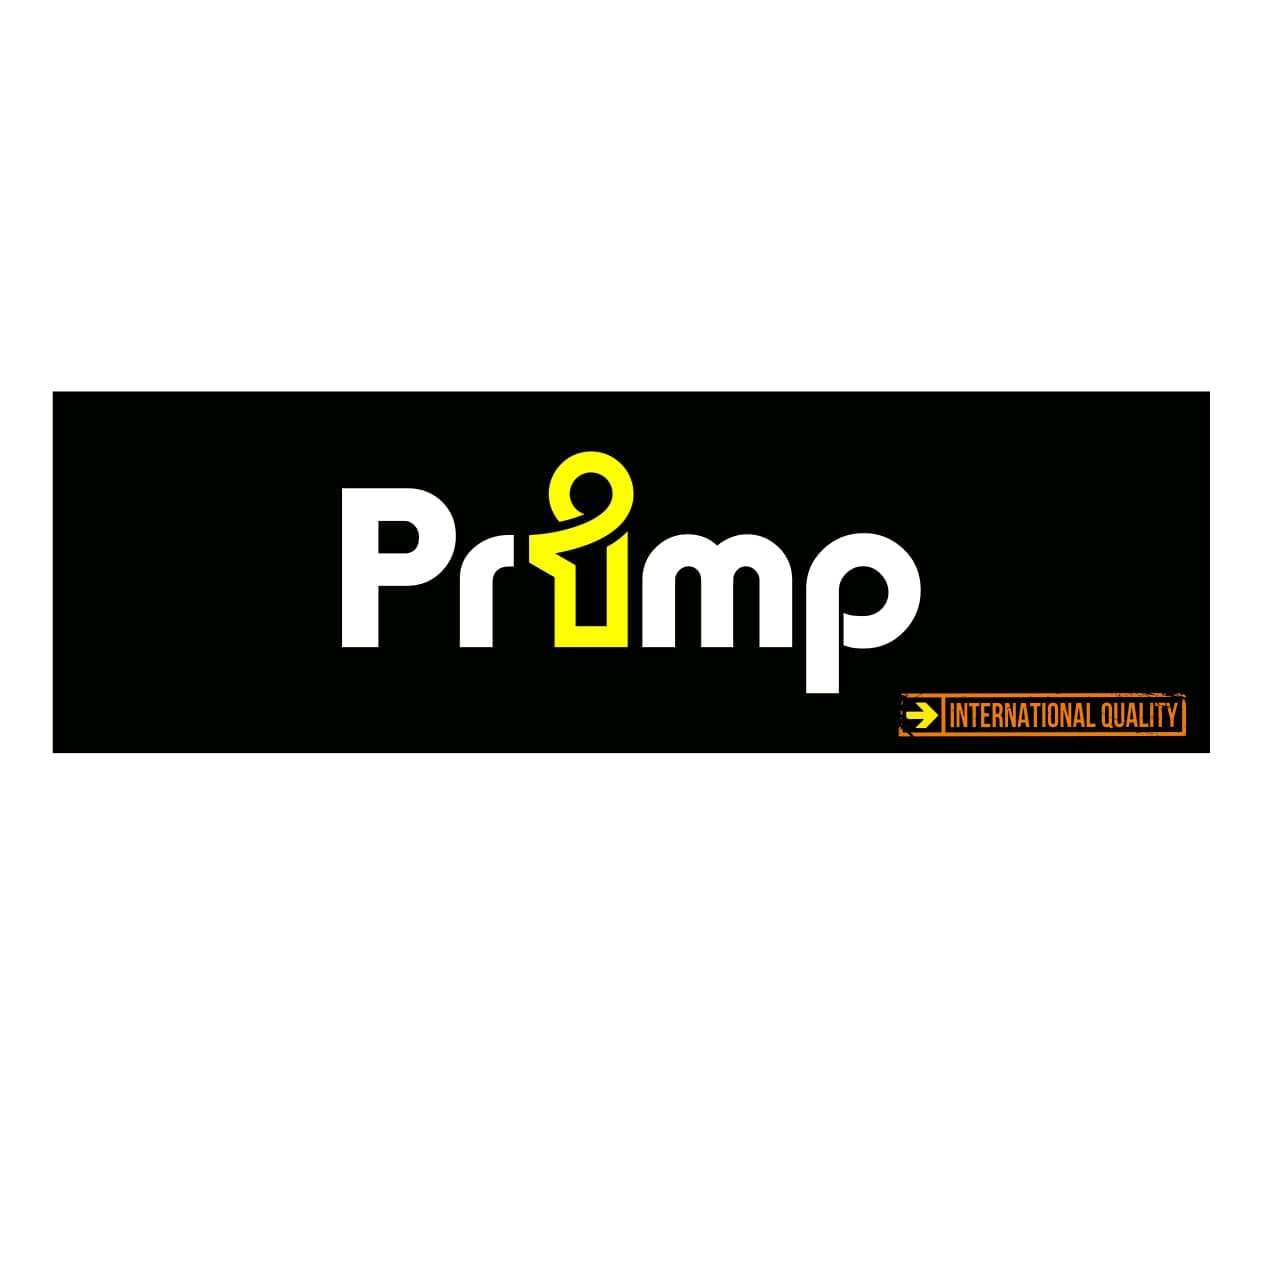 PRIMP